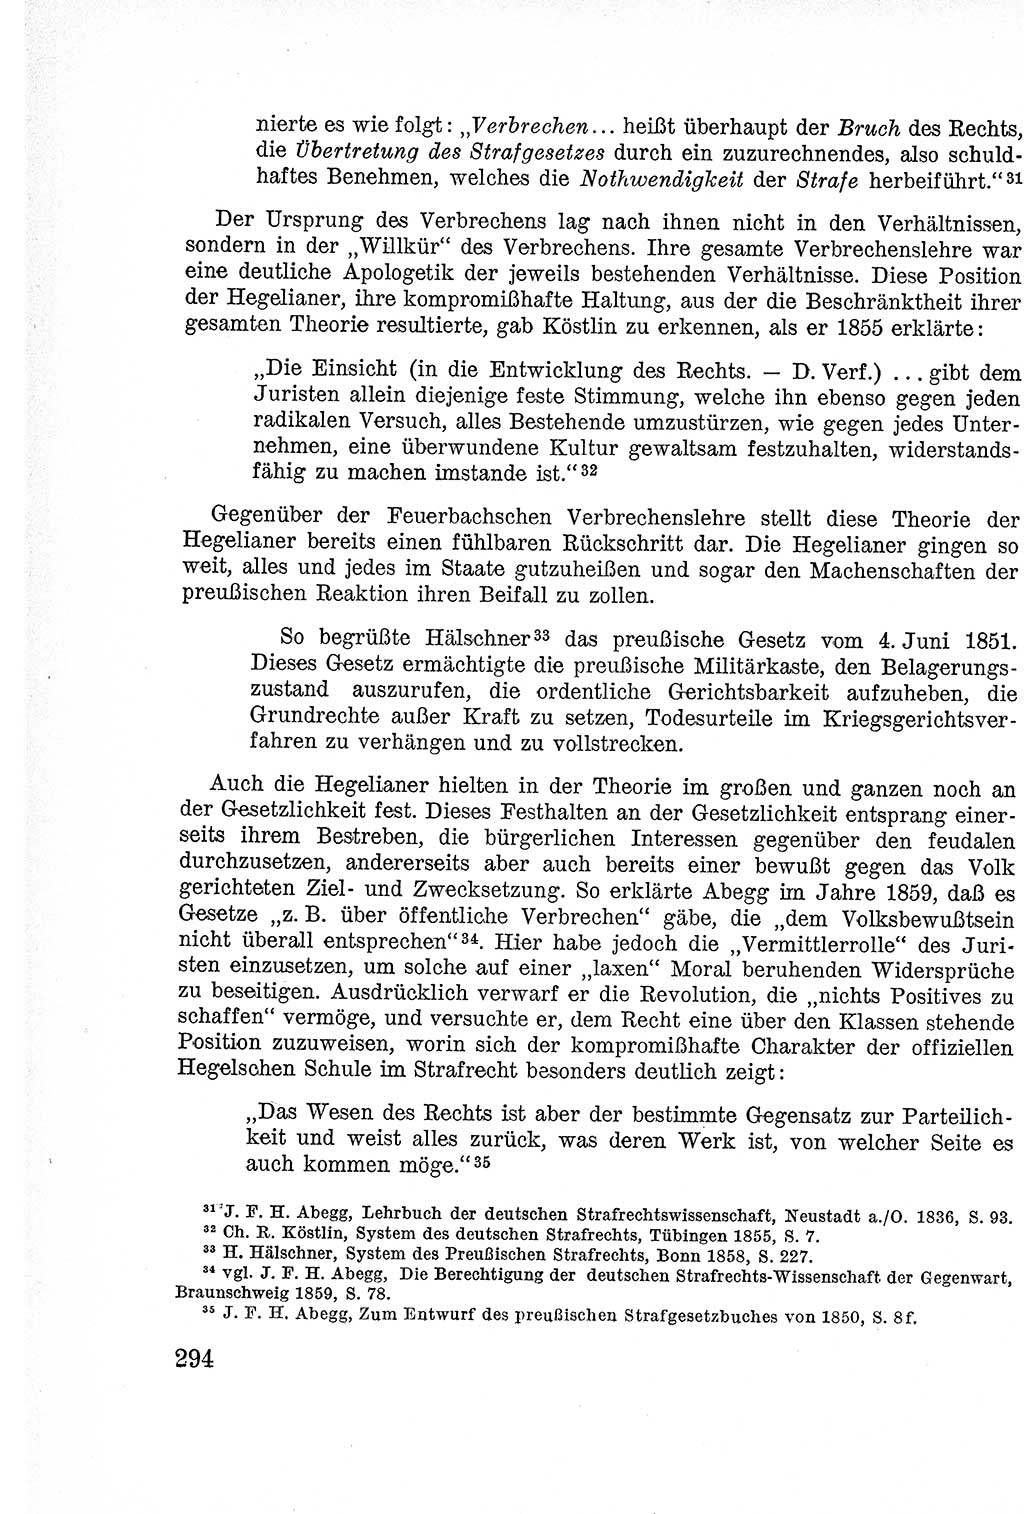 Lehrbuch des Strafrechts der Deutschen Demokratischen Republik (DDR), Allgemeiner Teil 1957, Seite 294 (Lb. Strafr. DDR AT 1957, S. 294)